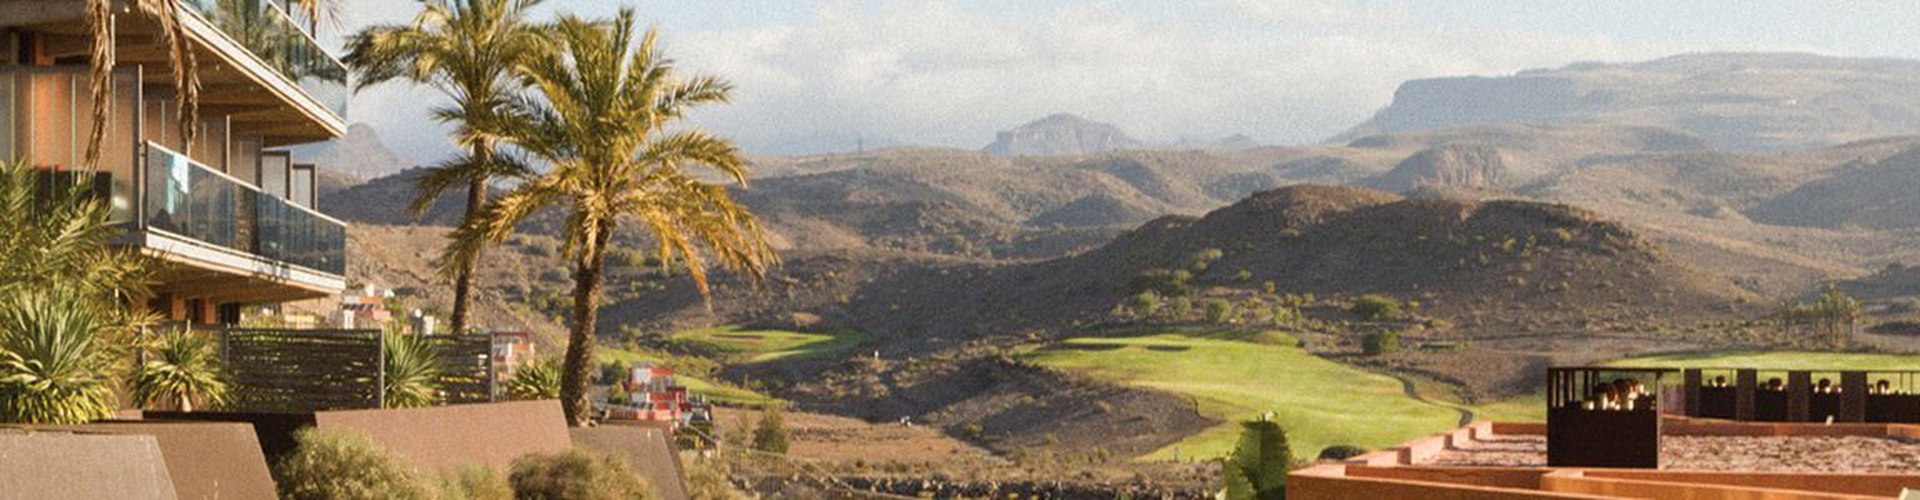 Salobre Gran Canaria Golf Resort - Maspalomas - 